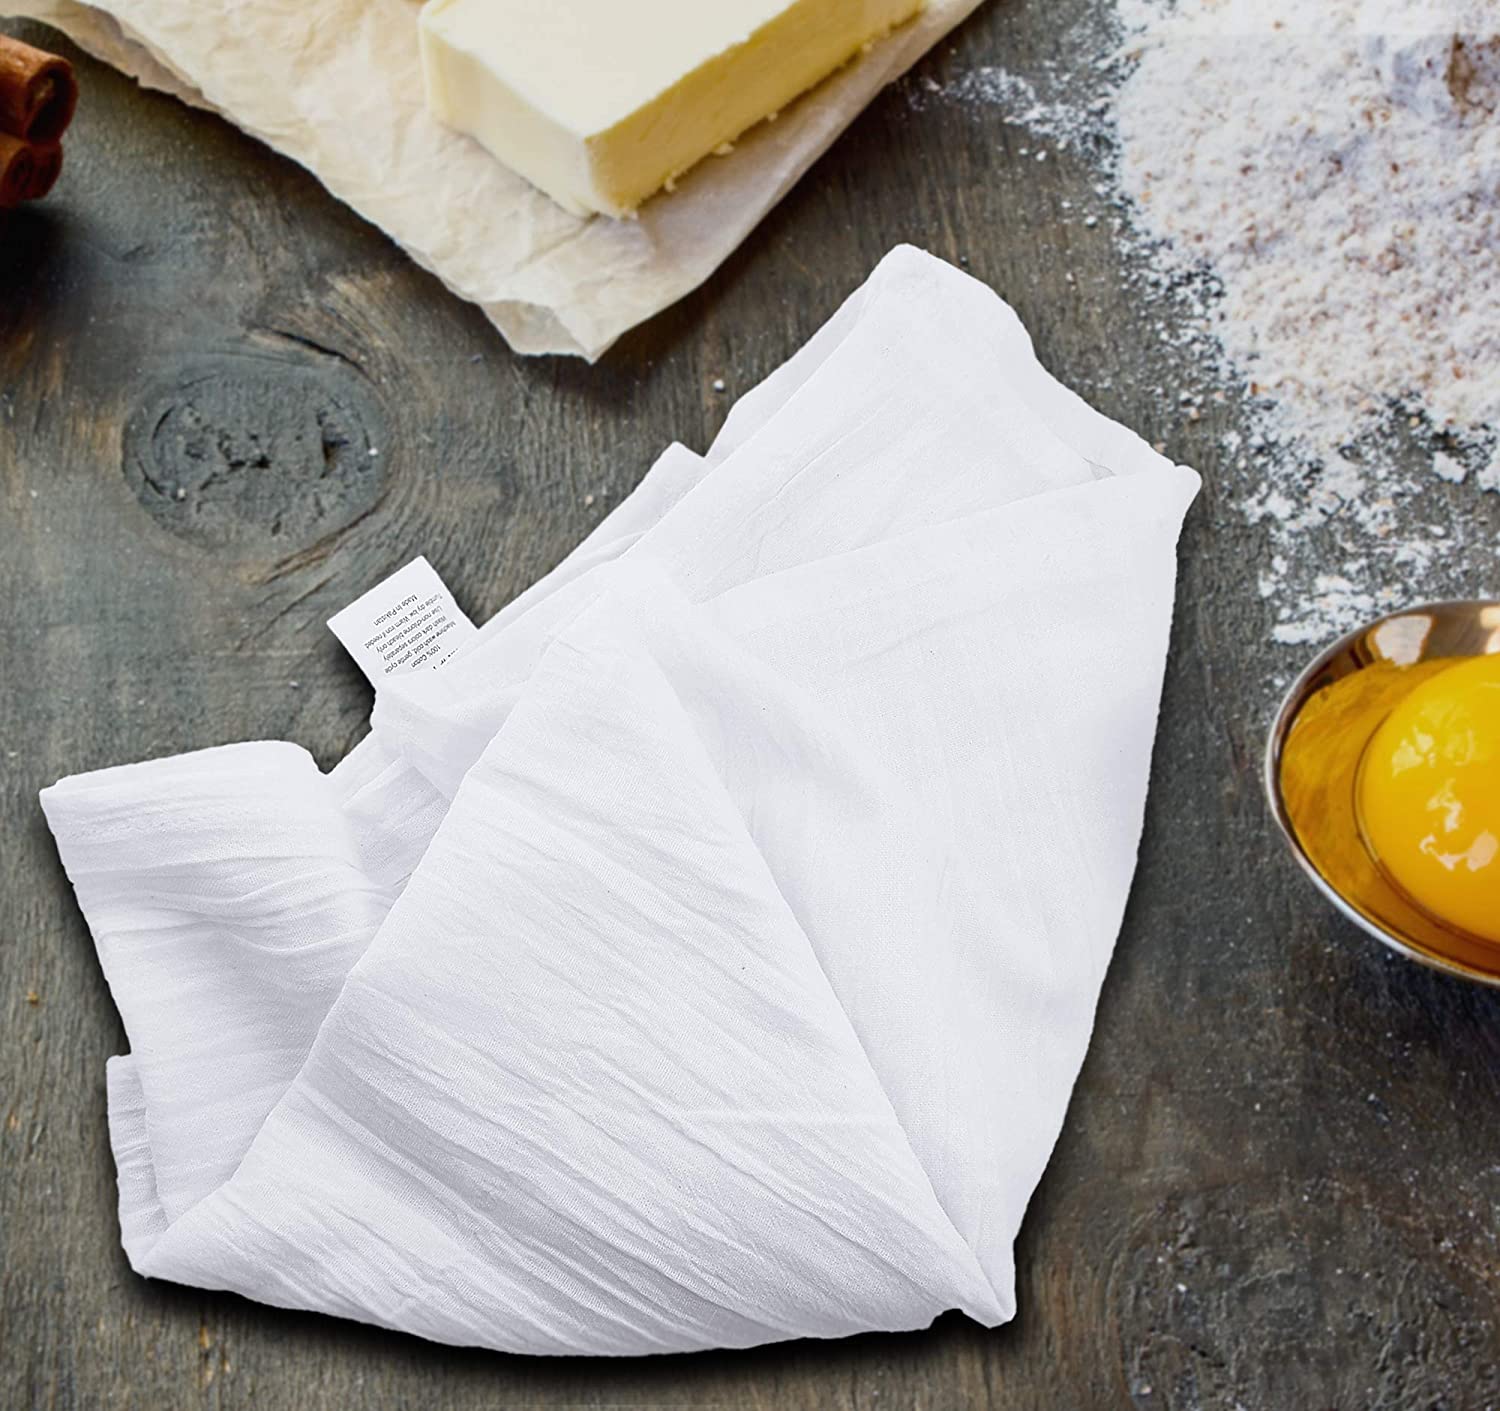 Flour Sack Towels Bulk Flour Sack Towels Wholesale 27 X 27 Wholesale Flour  Sack Towels Soft Available in White & Natural 100% Cotton 